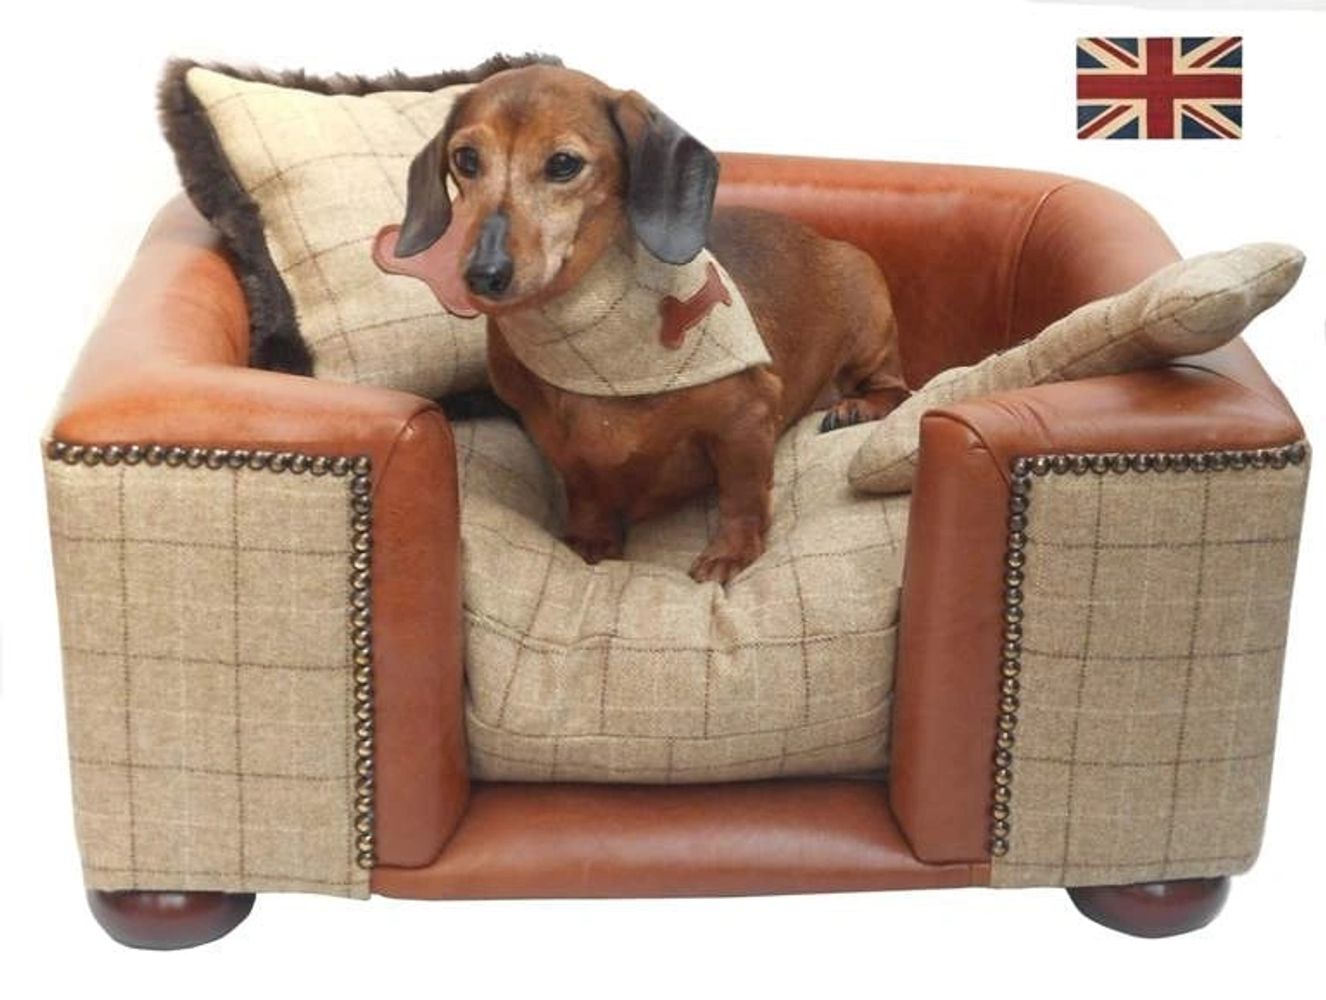  Luxury Dog Bed Bespoke Luxury Dog Furniture Tweed and Leather